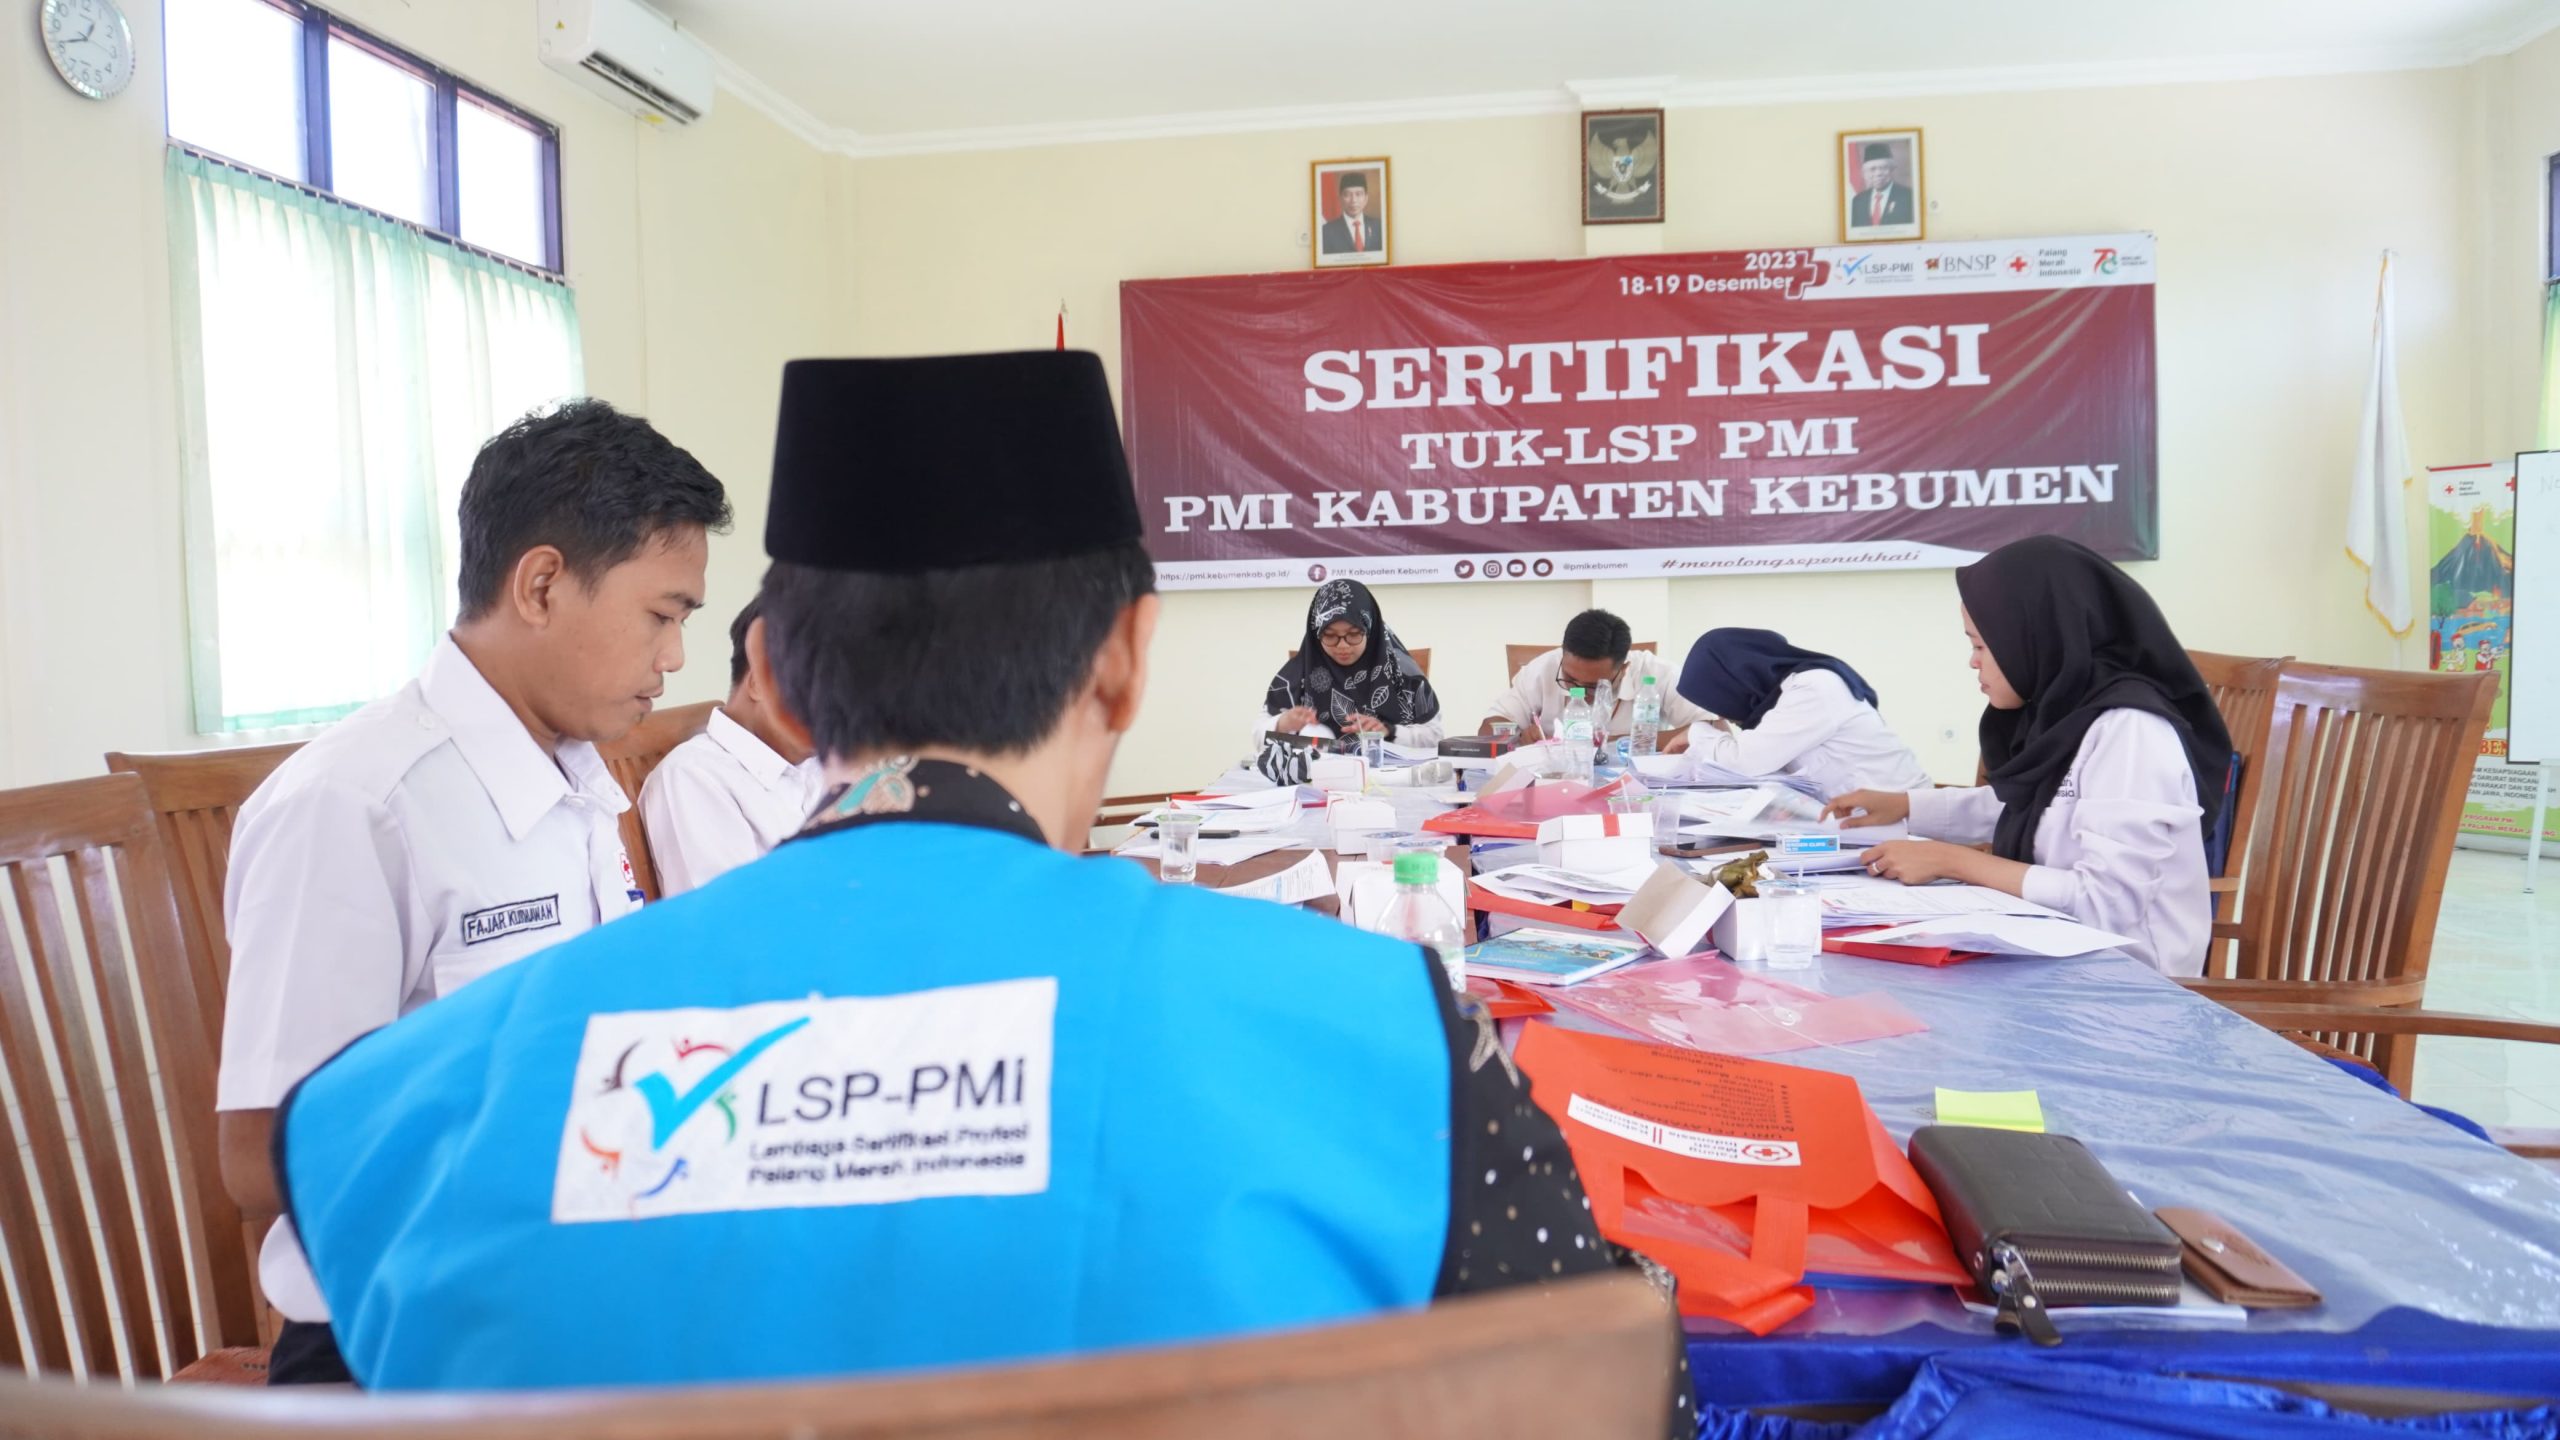 10 Peserta Ikuti Sertifikasi TUK-LSP PMI Kabupaten Kebumen